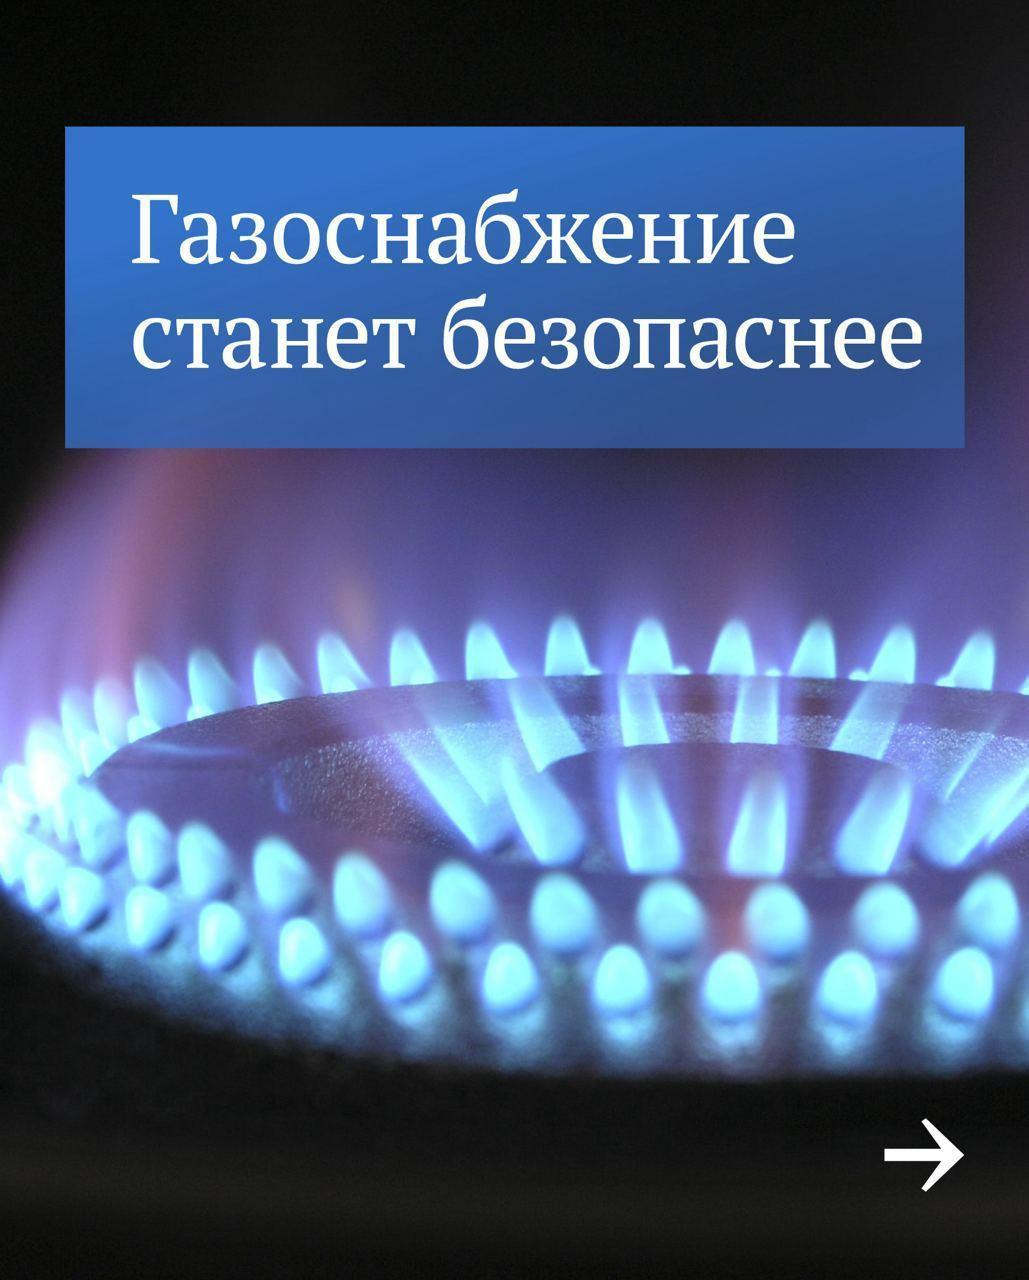 Изменения в законодательстве о техобслуживании газового оборудования, для чего эти изменения..